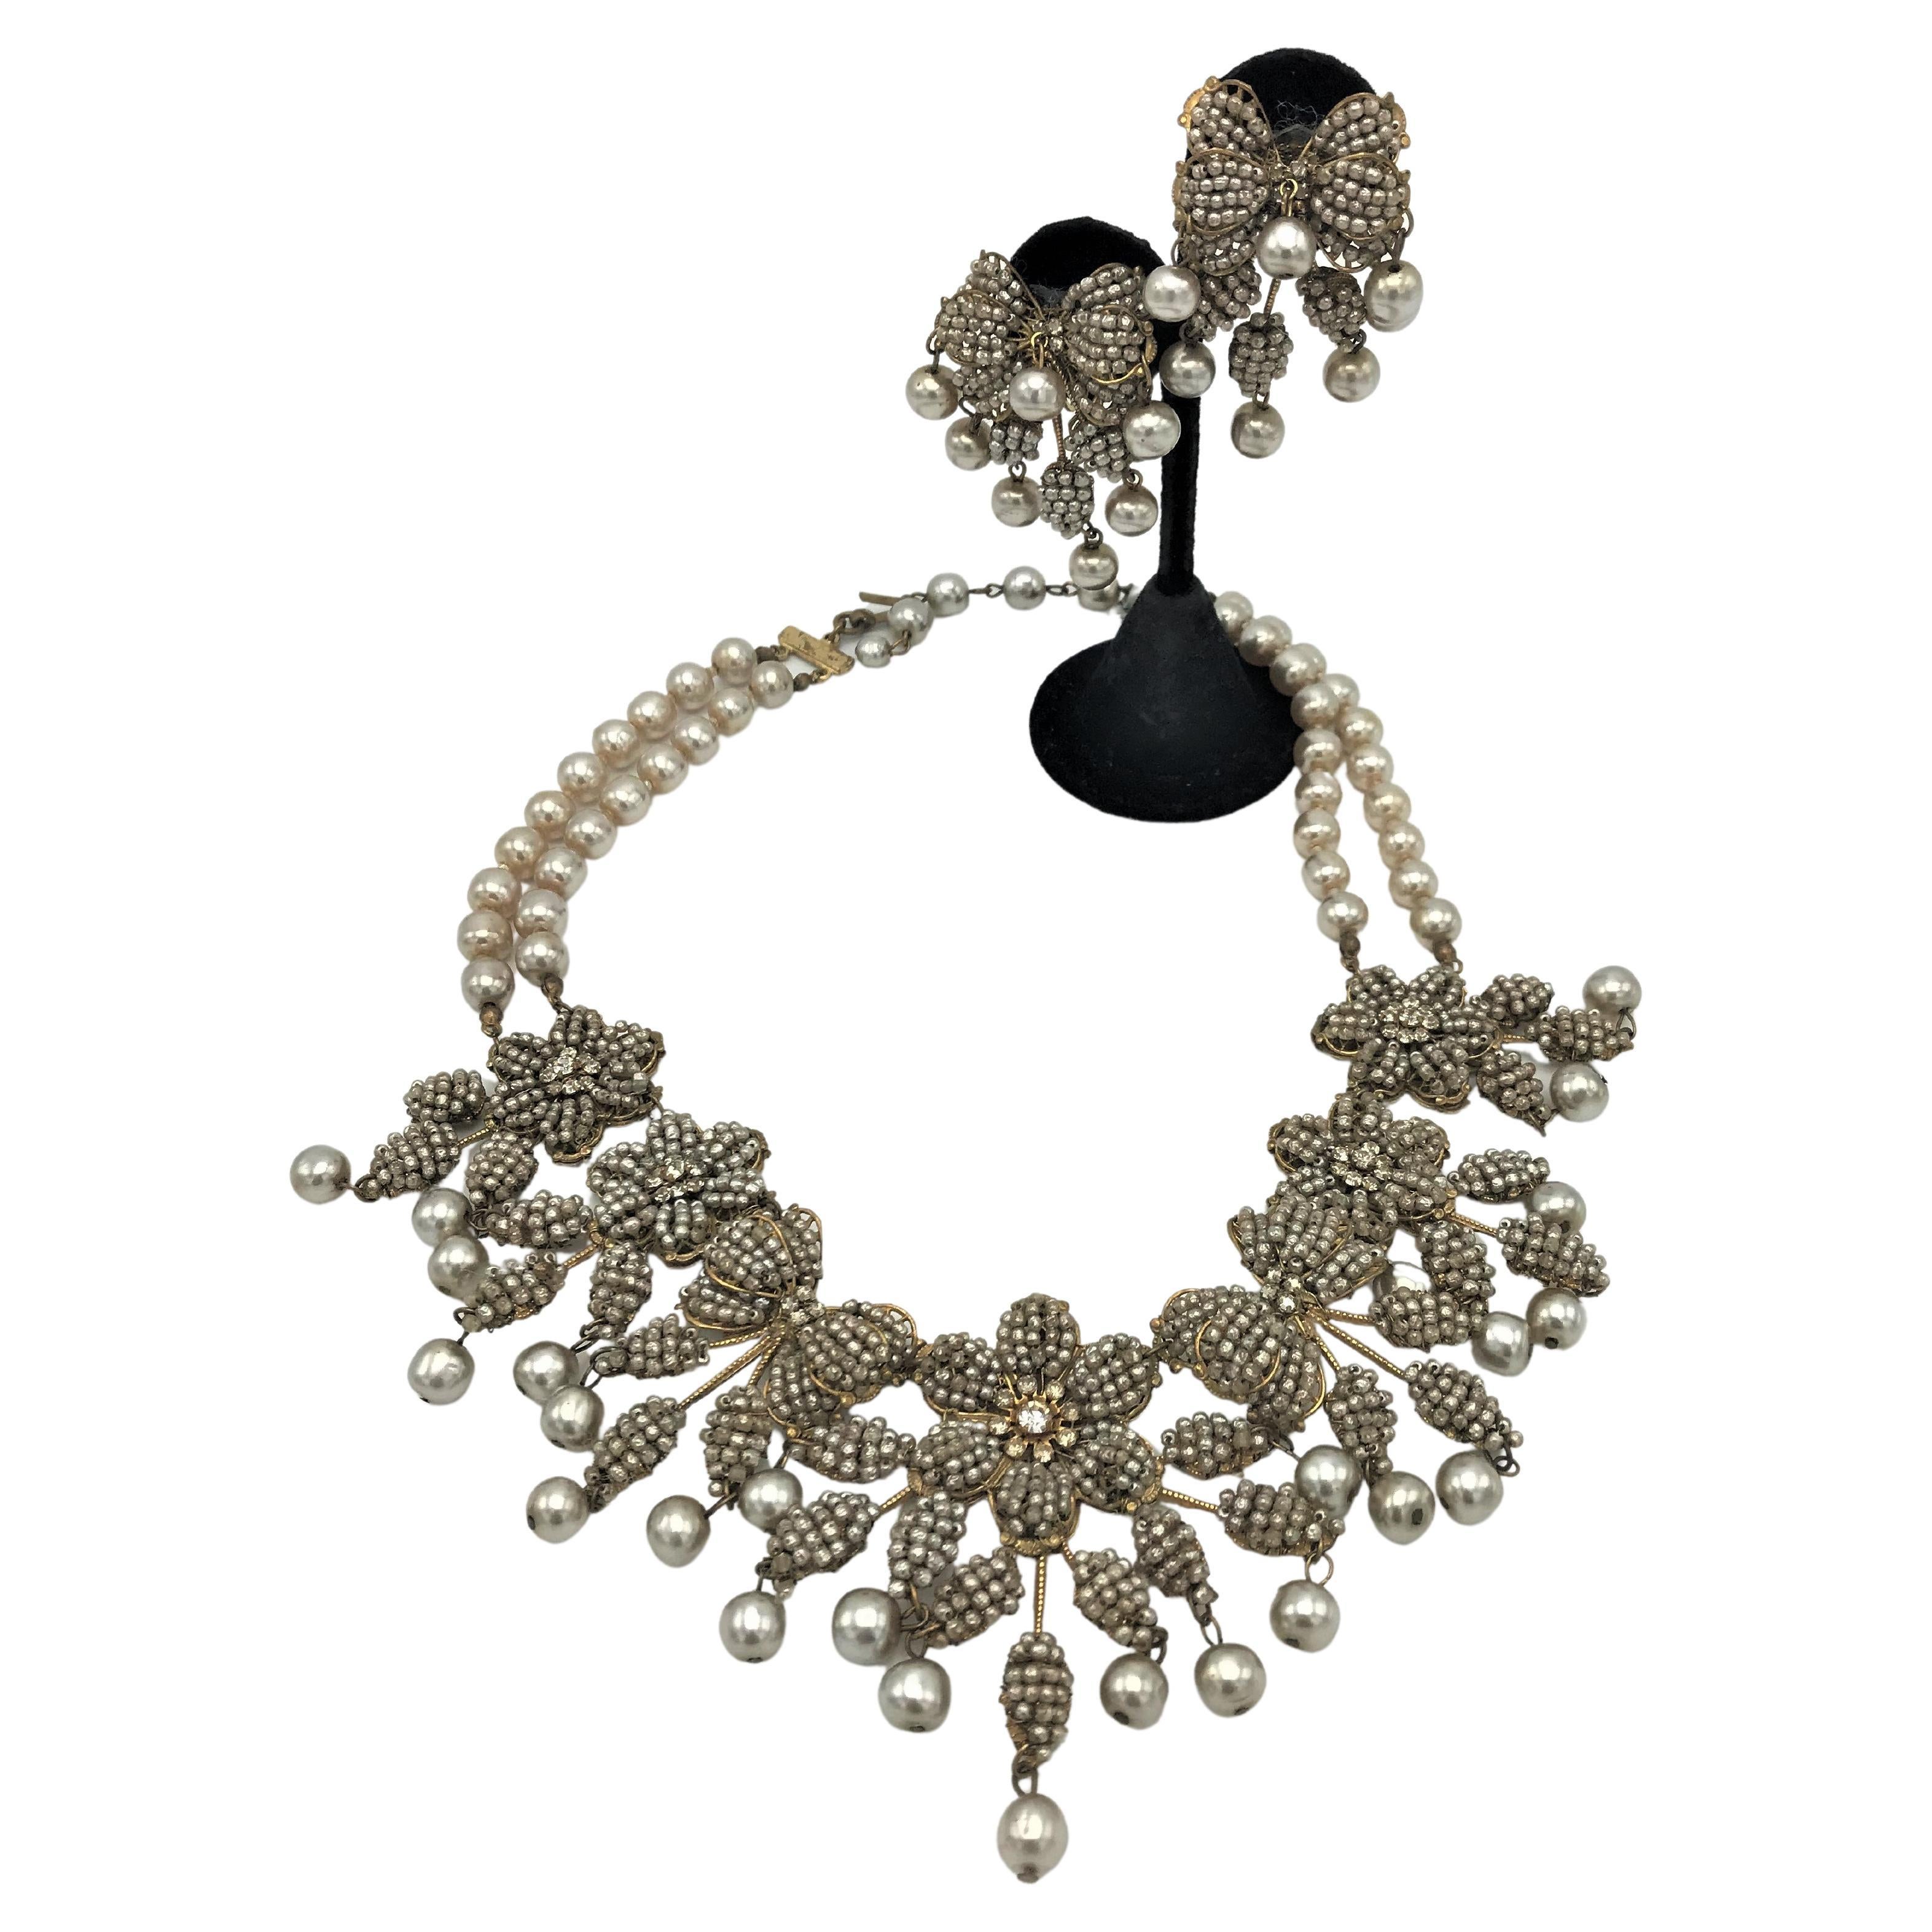 Über 
Wunderschönes Collier mit passenden Ohrclips aus winzigen Perlen, komplett von Hand bestickt, Strasssteinen und Kunstperlen auf Haskells charakteristischem MATERIAL - 